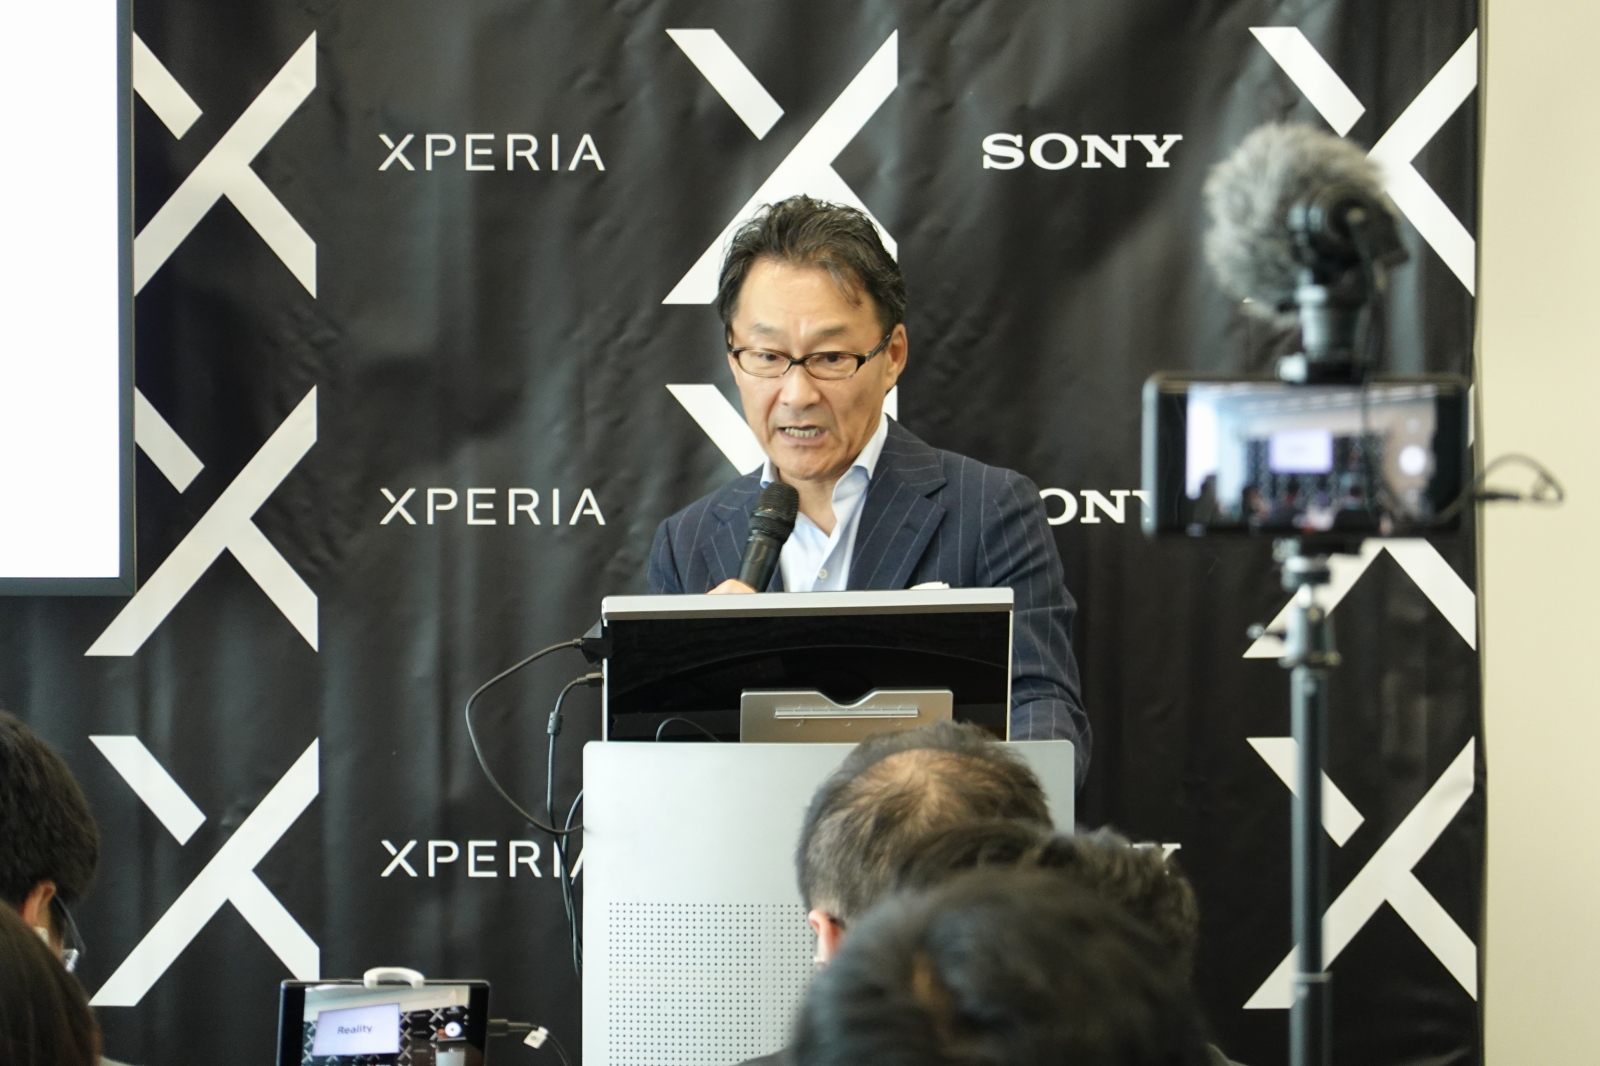 Sony 未來發展的宗旨是 更貼近人，並集中 5G商品的開發 ! Xperia XZ3 集結極致黑科技~